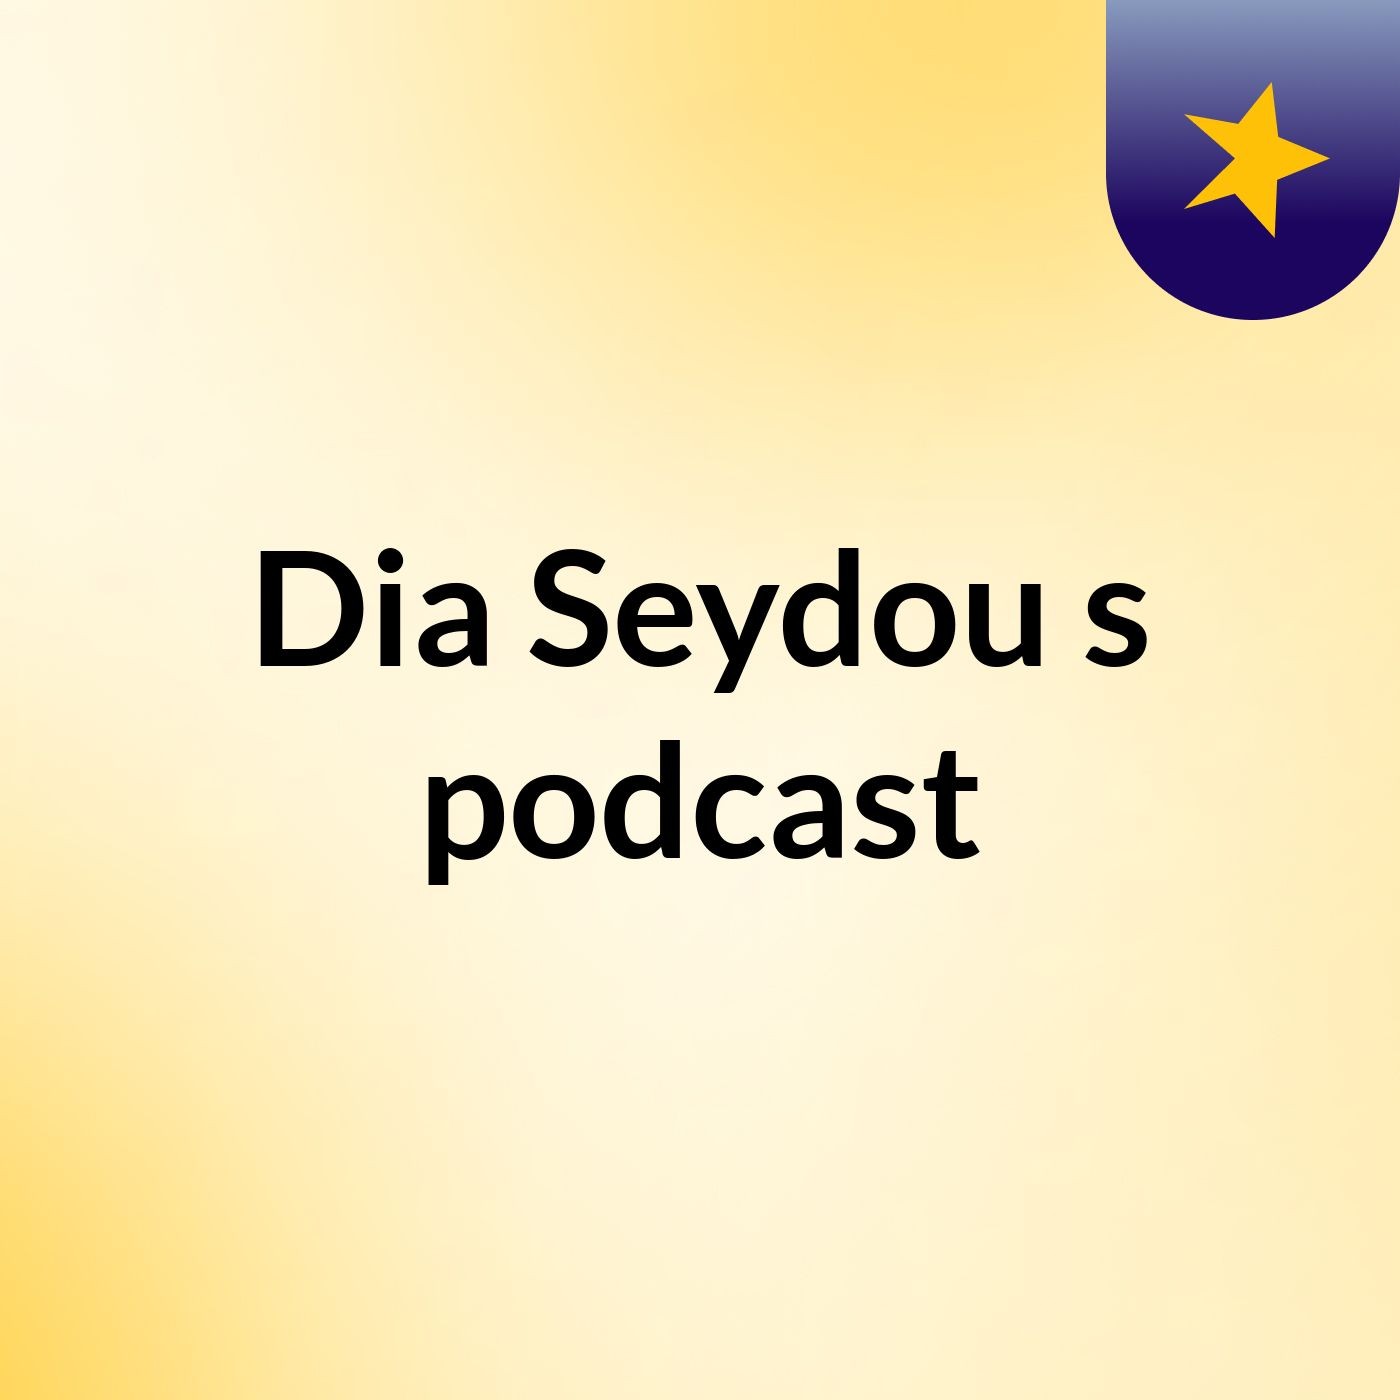 Dia Seydou's podcast